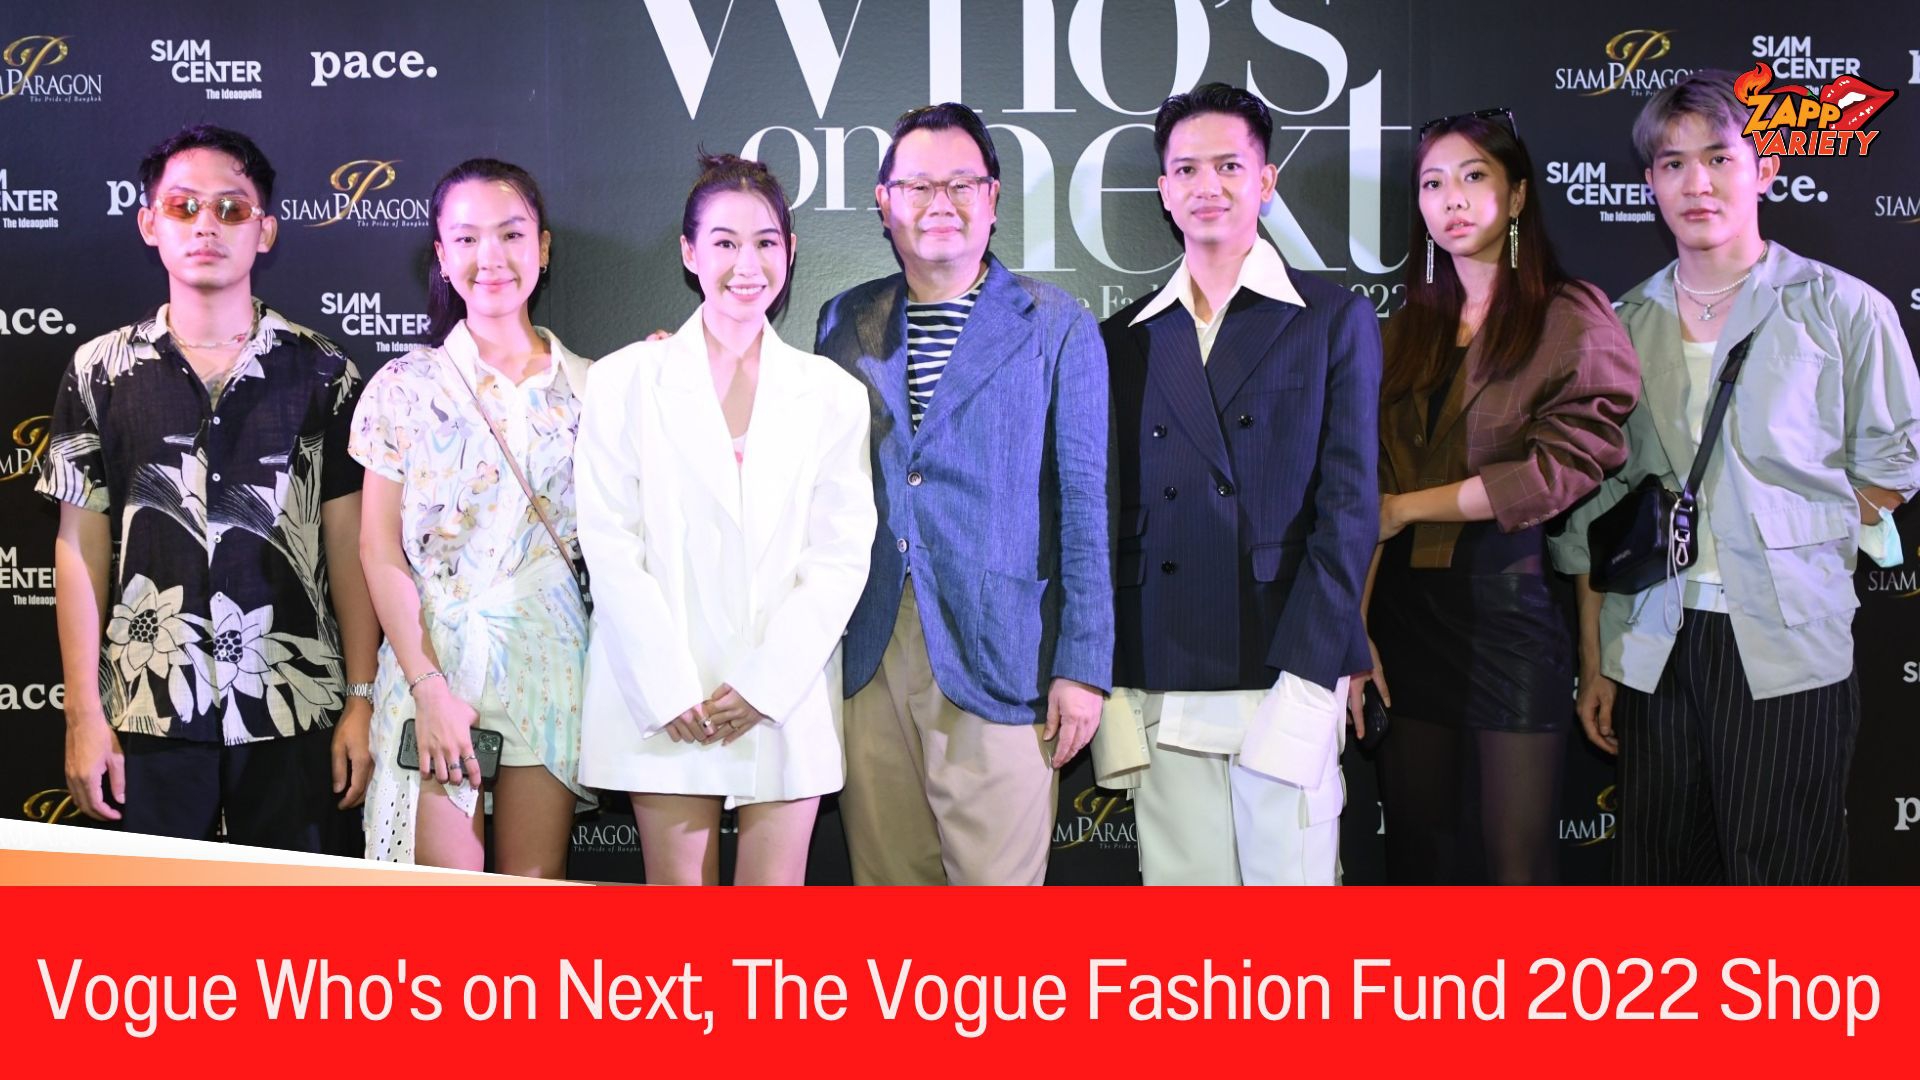 4 ดีไซเนอร์รุ่นใหม่ อวดผลงานการออกแบบใน “Vogue Who's on Next, The Vogue Fashion Fund 2022 Shop”